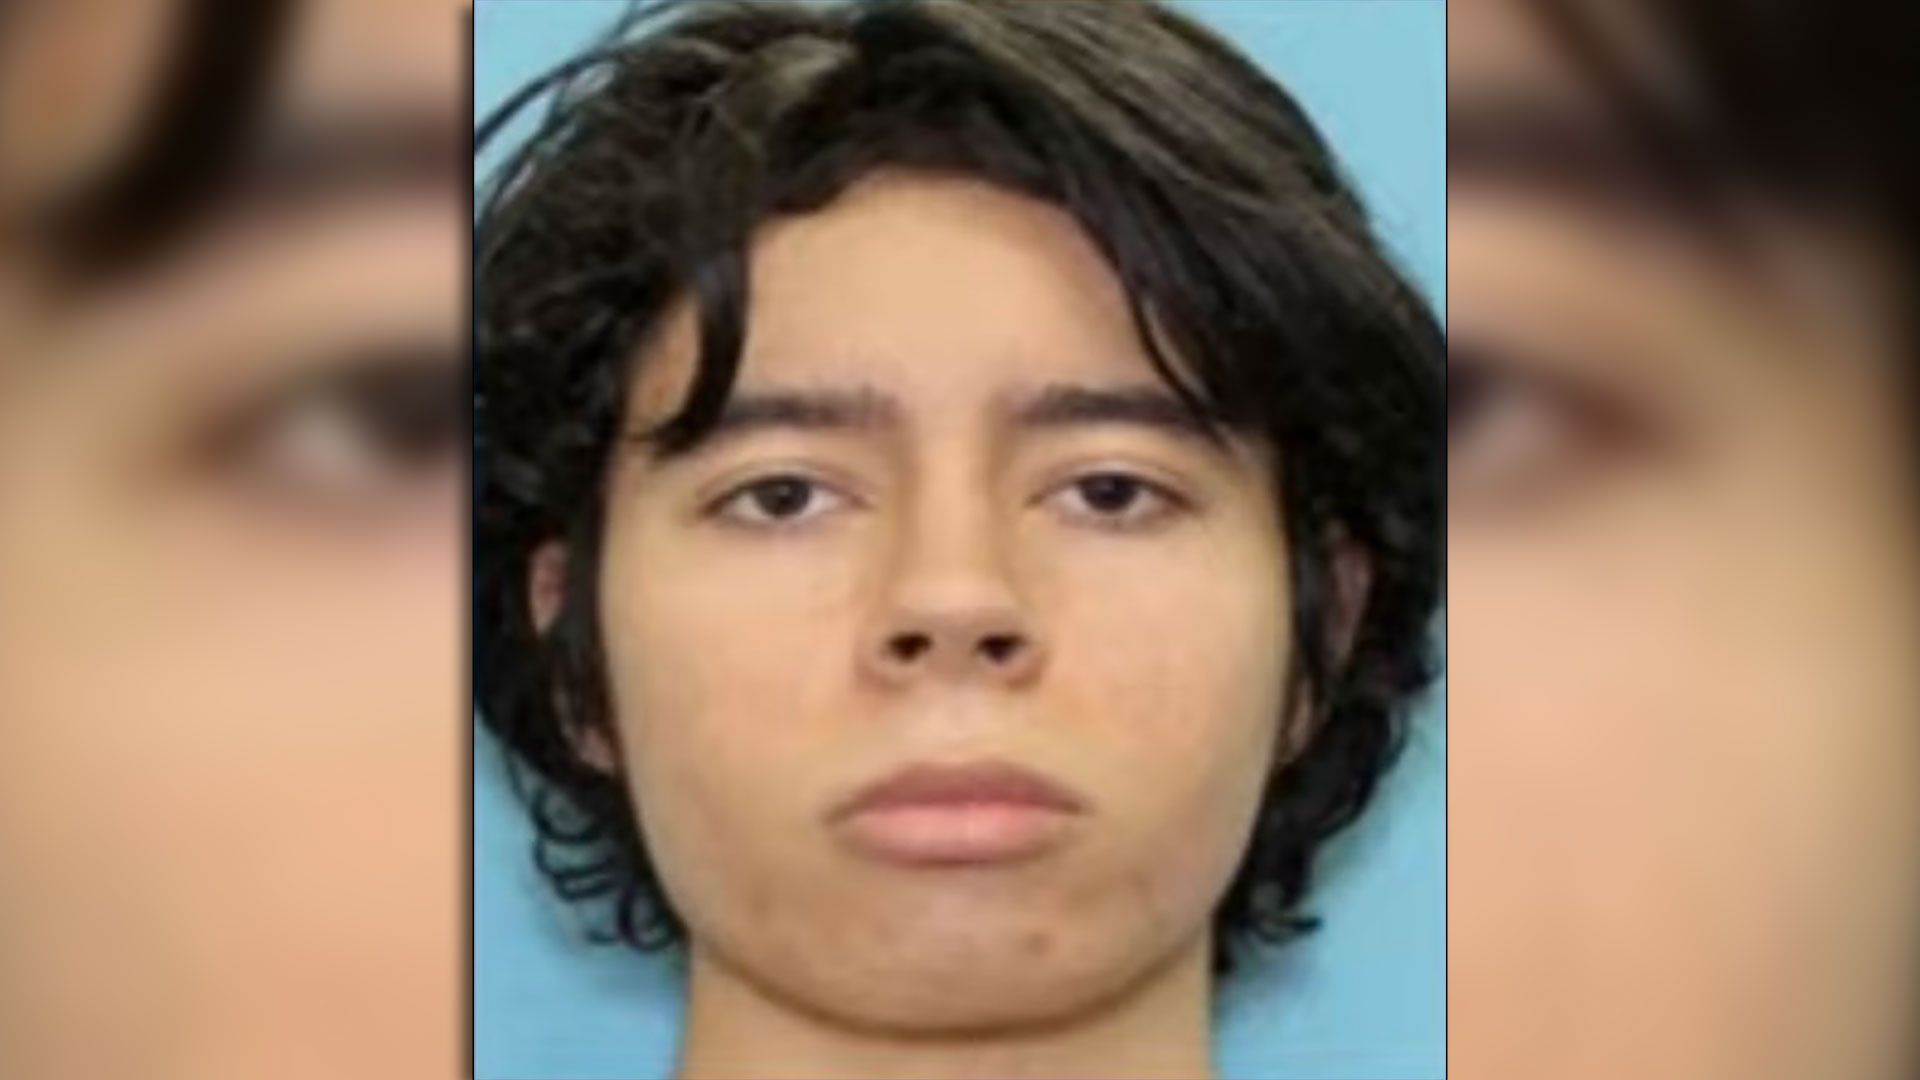 Salvador Ramos, el asaltante, tenía 18 años recién cumplidos y se había comprado por su cumpleaños el rifle automático AR-15 con el que disparó.